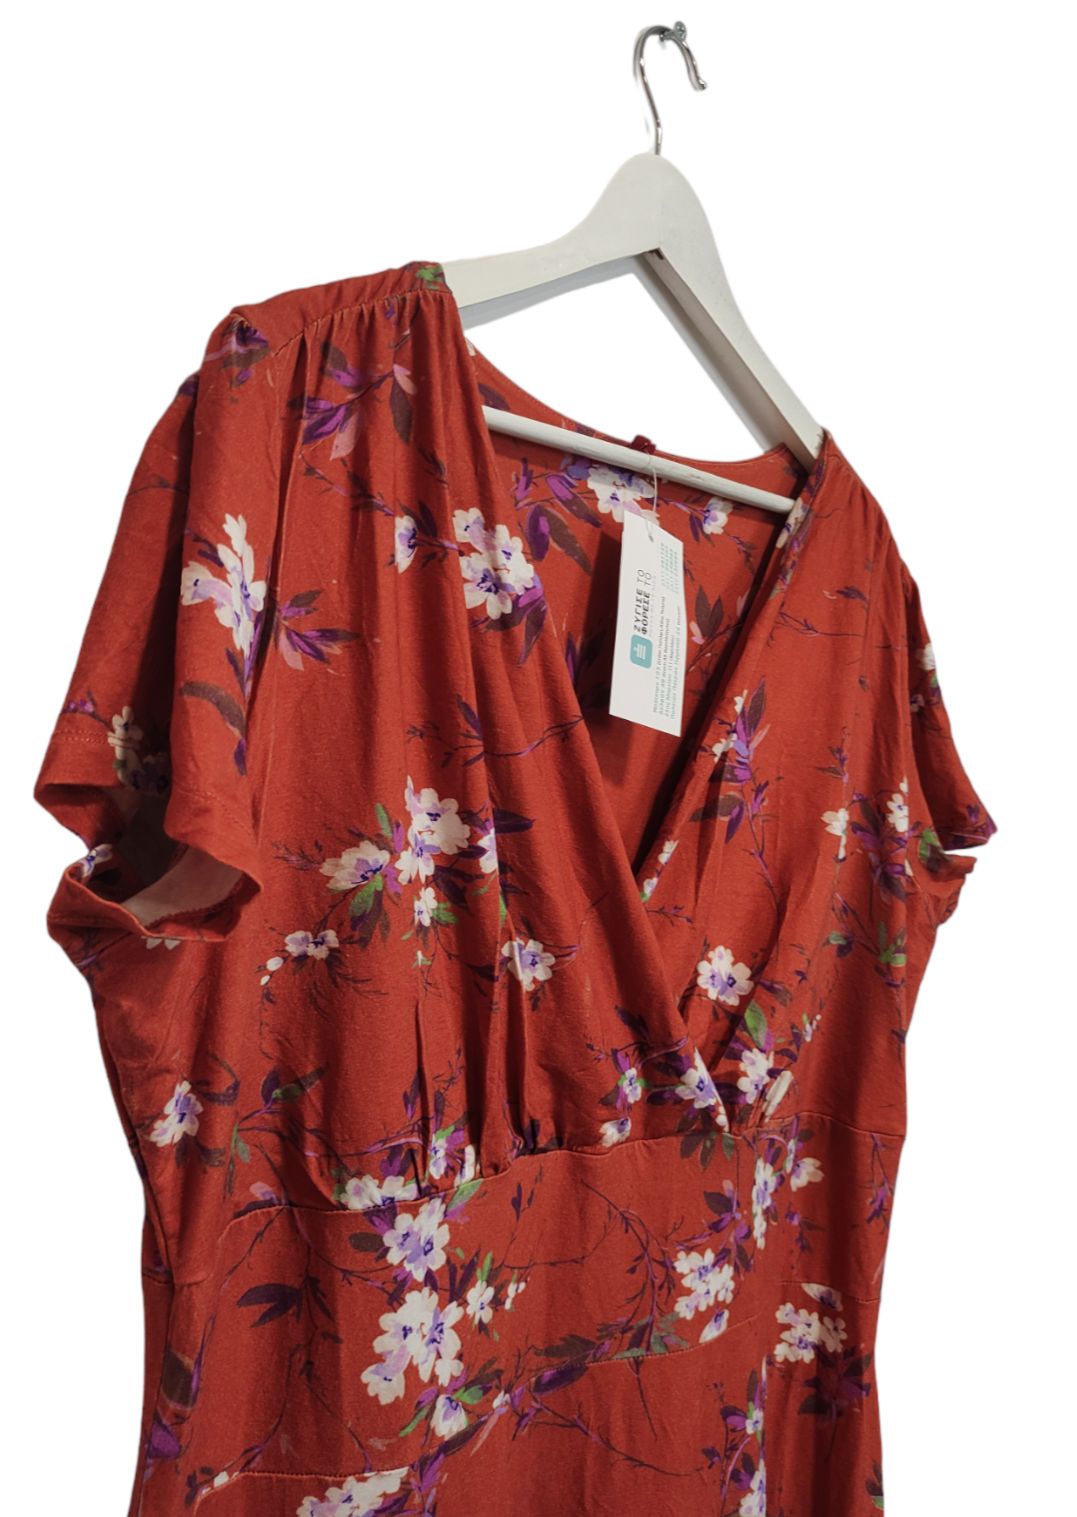 Κρουαζέ Midi, Φλοράλ Φόρεμα JOE BROWN σε Κεραμιδί Χρώμα (XL)